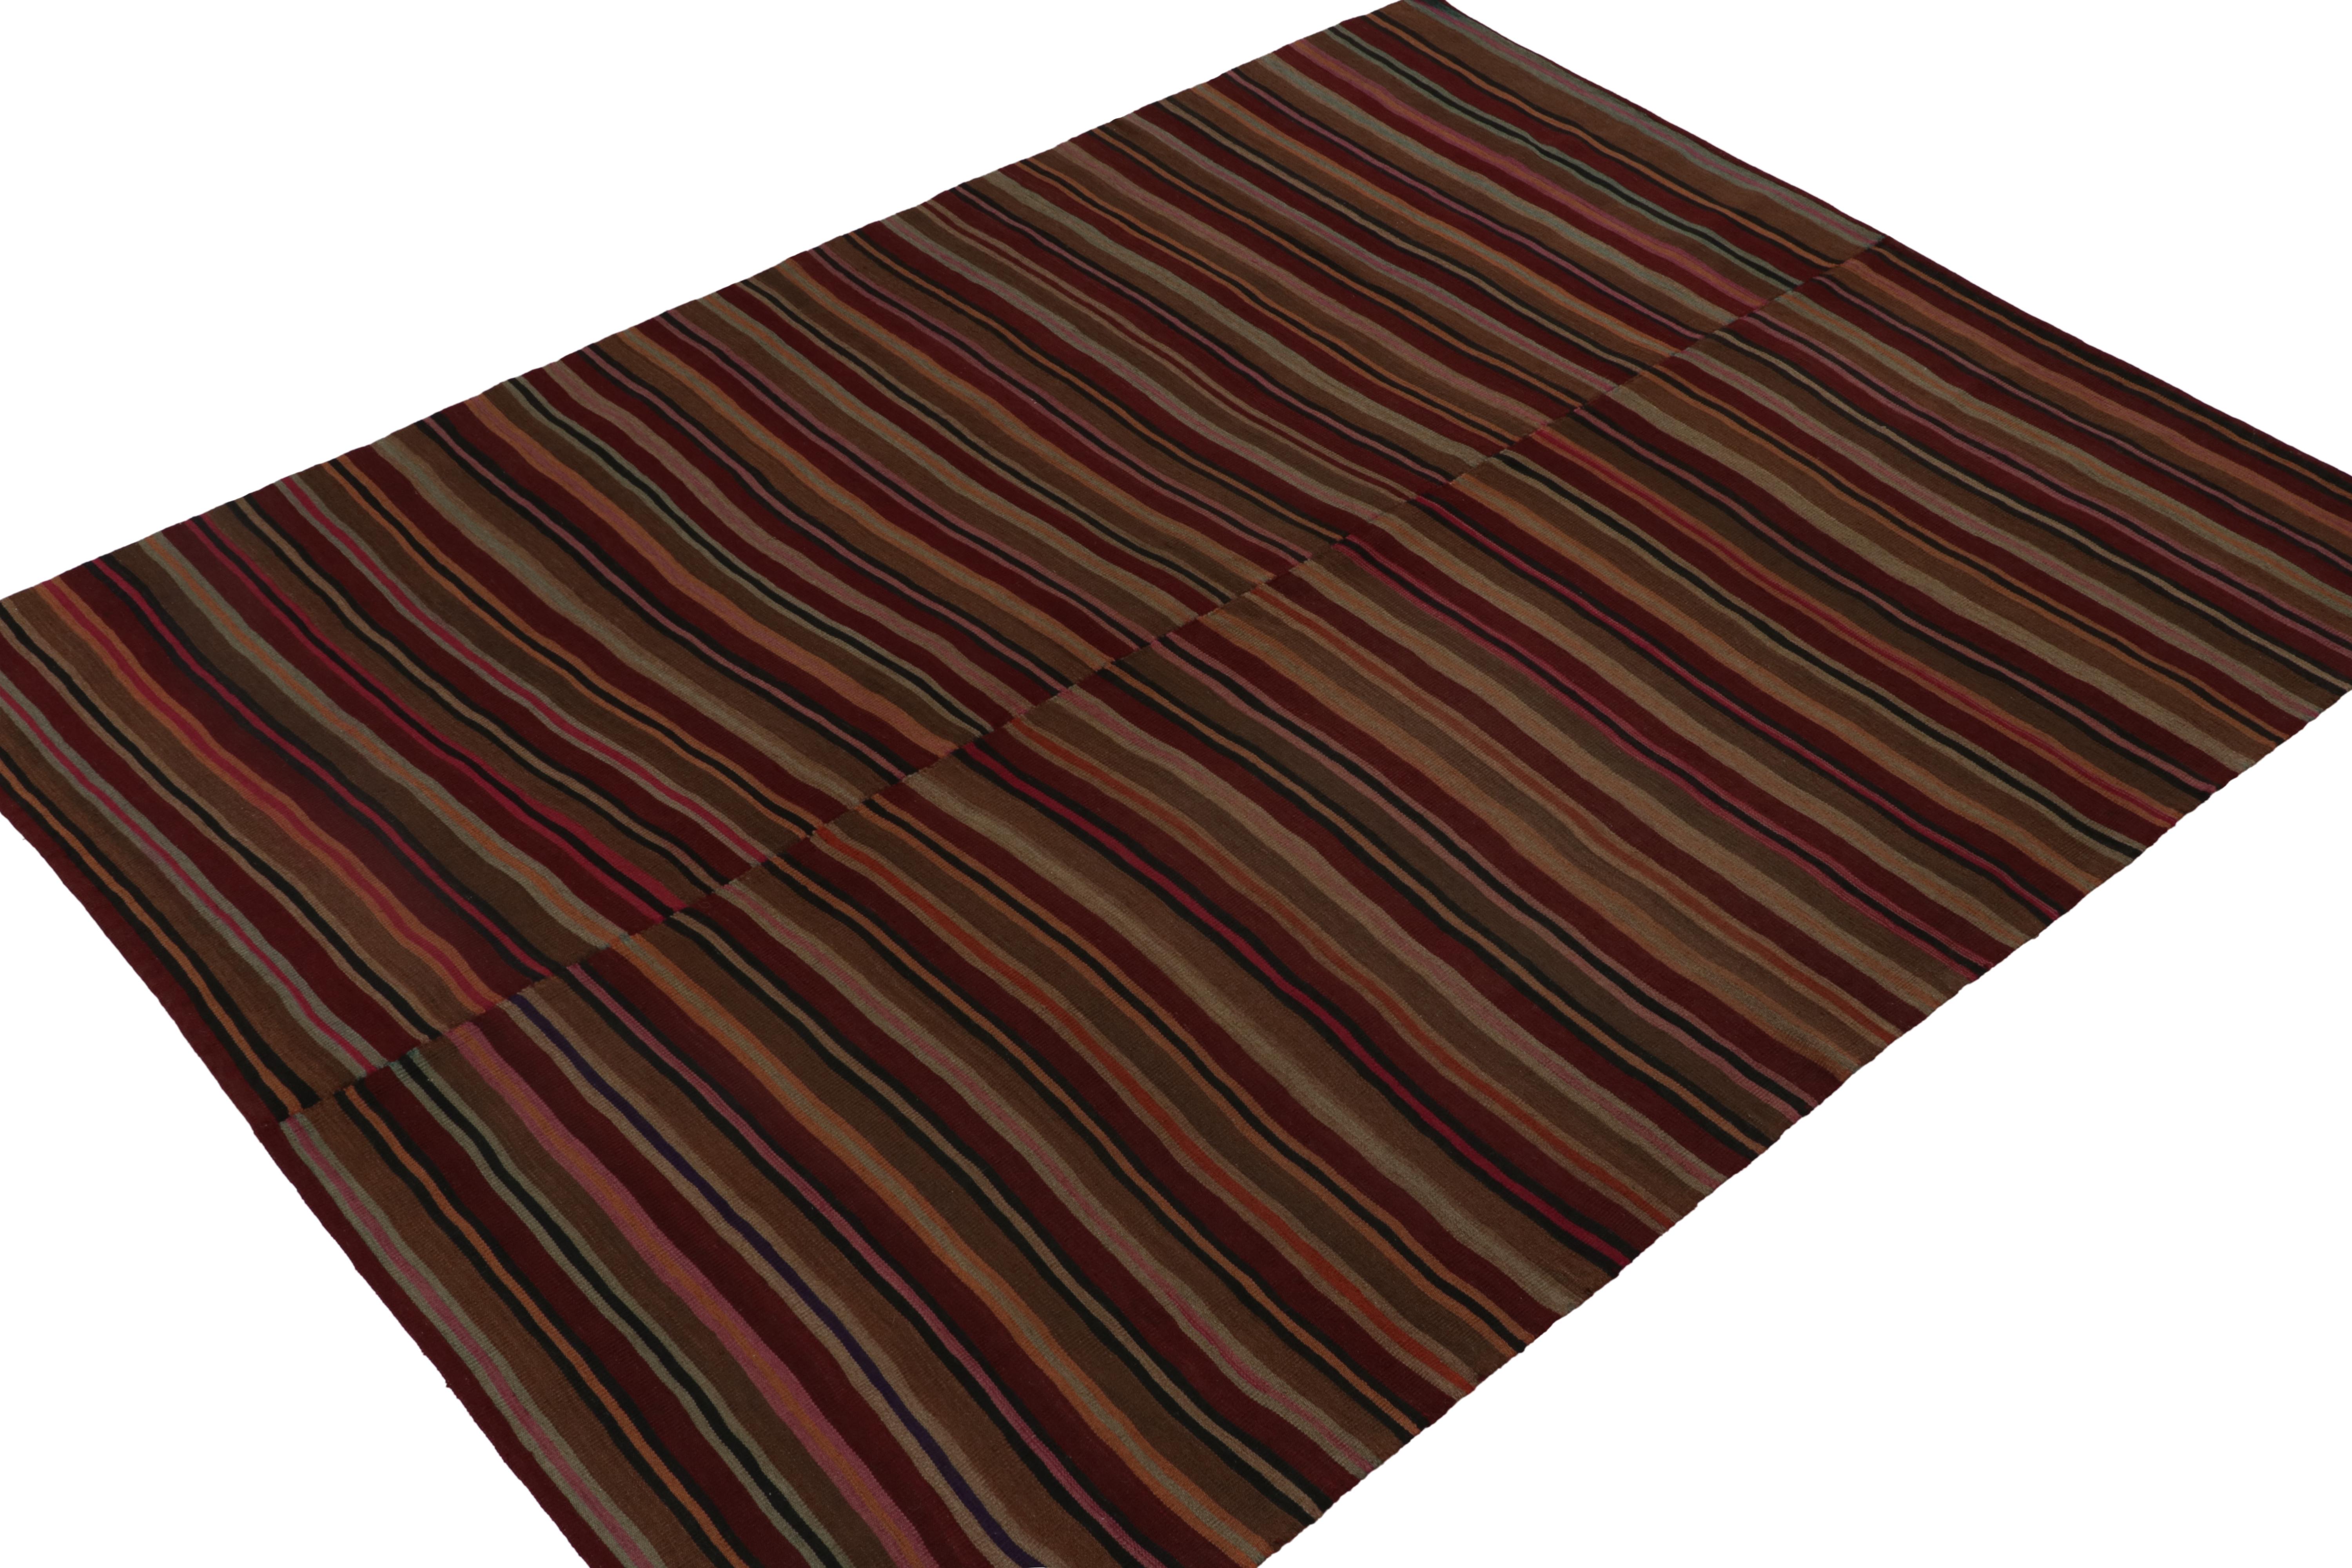 Diese Vintage 8x10 persischen Kelim ist einzigartig Panel gewebt Stammes-Teppich für seine Zeit-handgewebt in Wolle ca. 1950-1960.

Weiter zum Design:

Dieser Teppich, der aus einer langen Tradition von Stilen stammt, hat ein seltenes großes Format